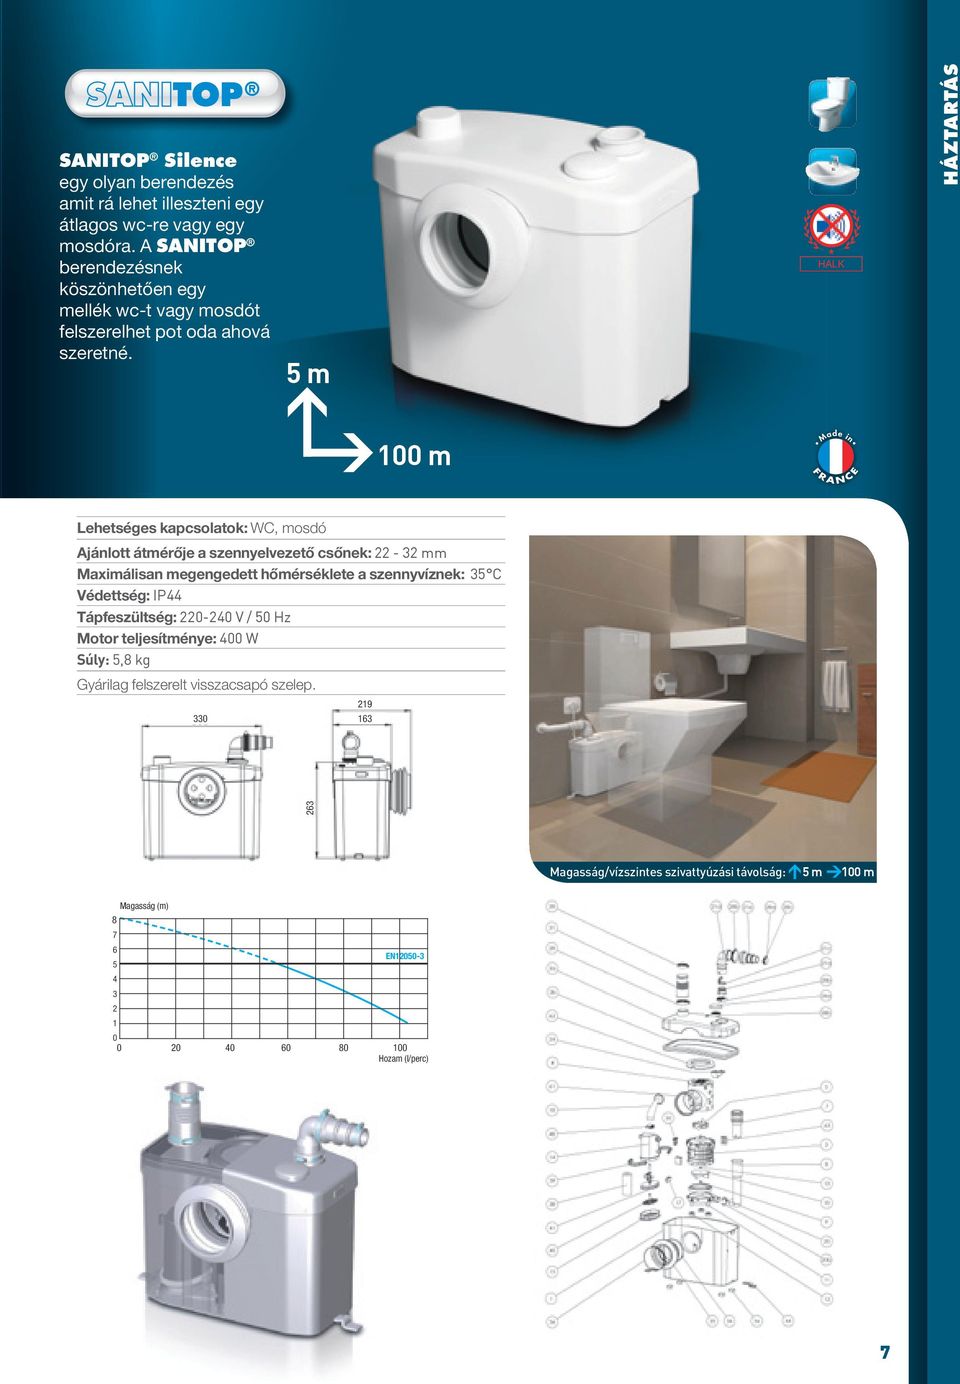 5 m HALK Háztartás 100 m Lehetséges kapcsolatok: WC, mosdó Ajánlott átmérője a szennyelvezető csőnek: - mm Maximálisan megengedett hőmérséklete a